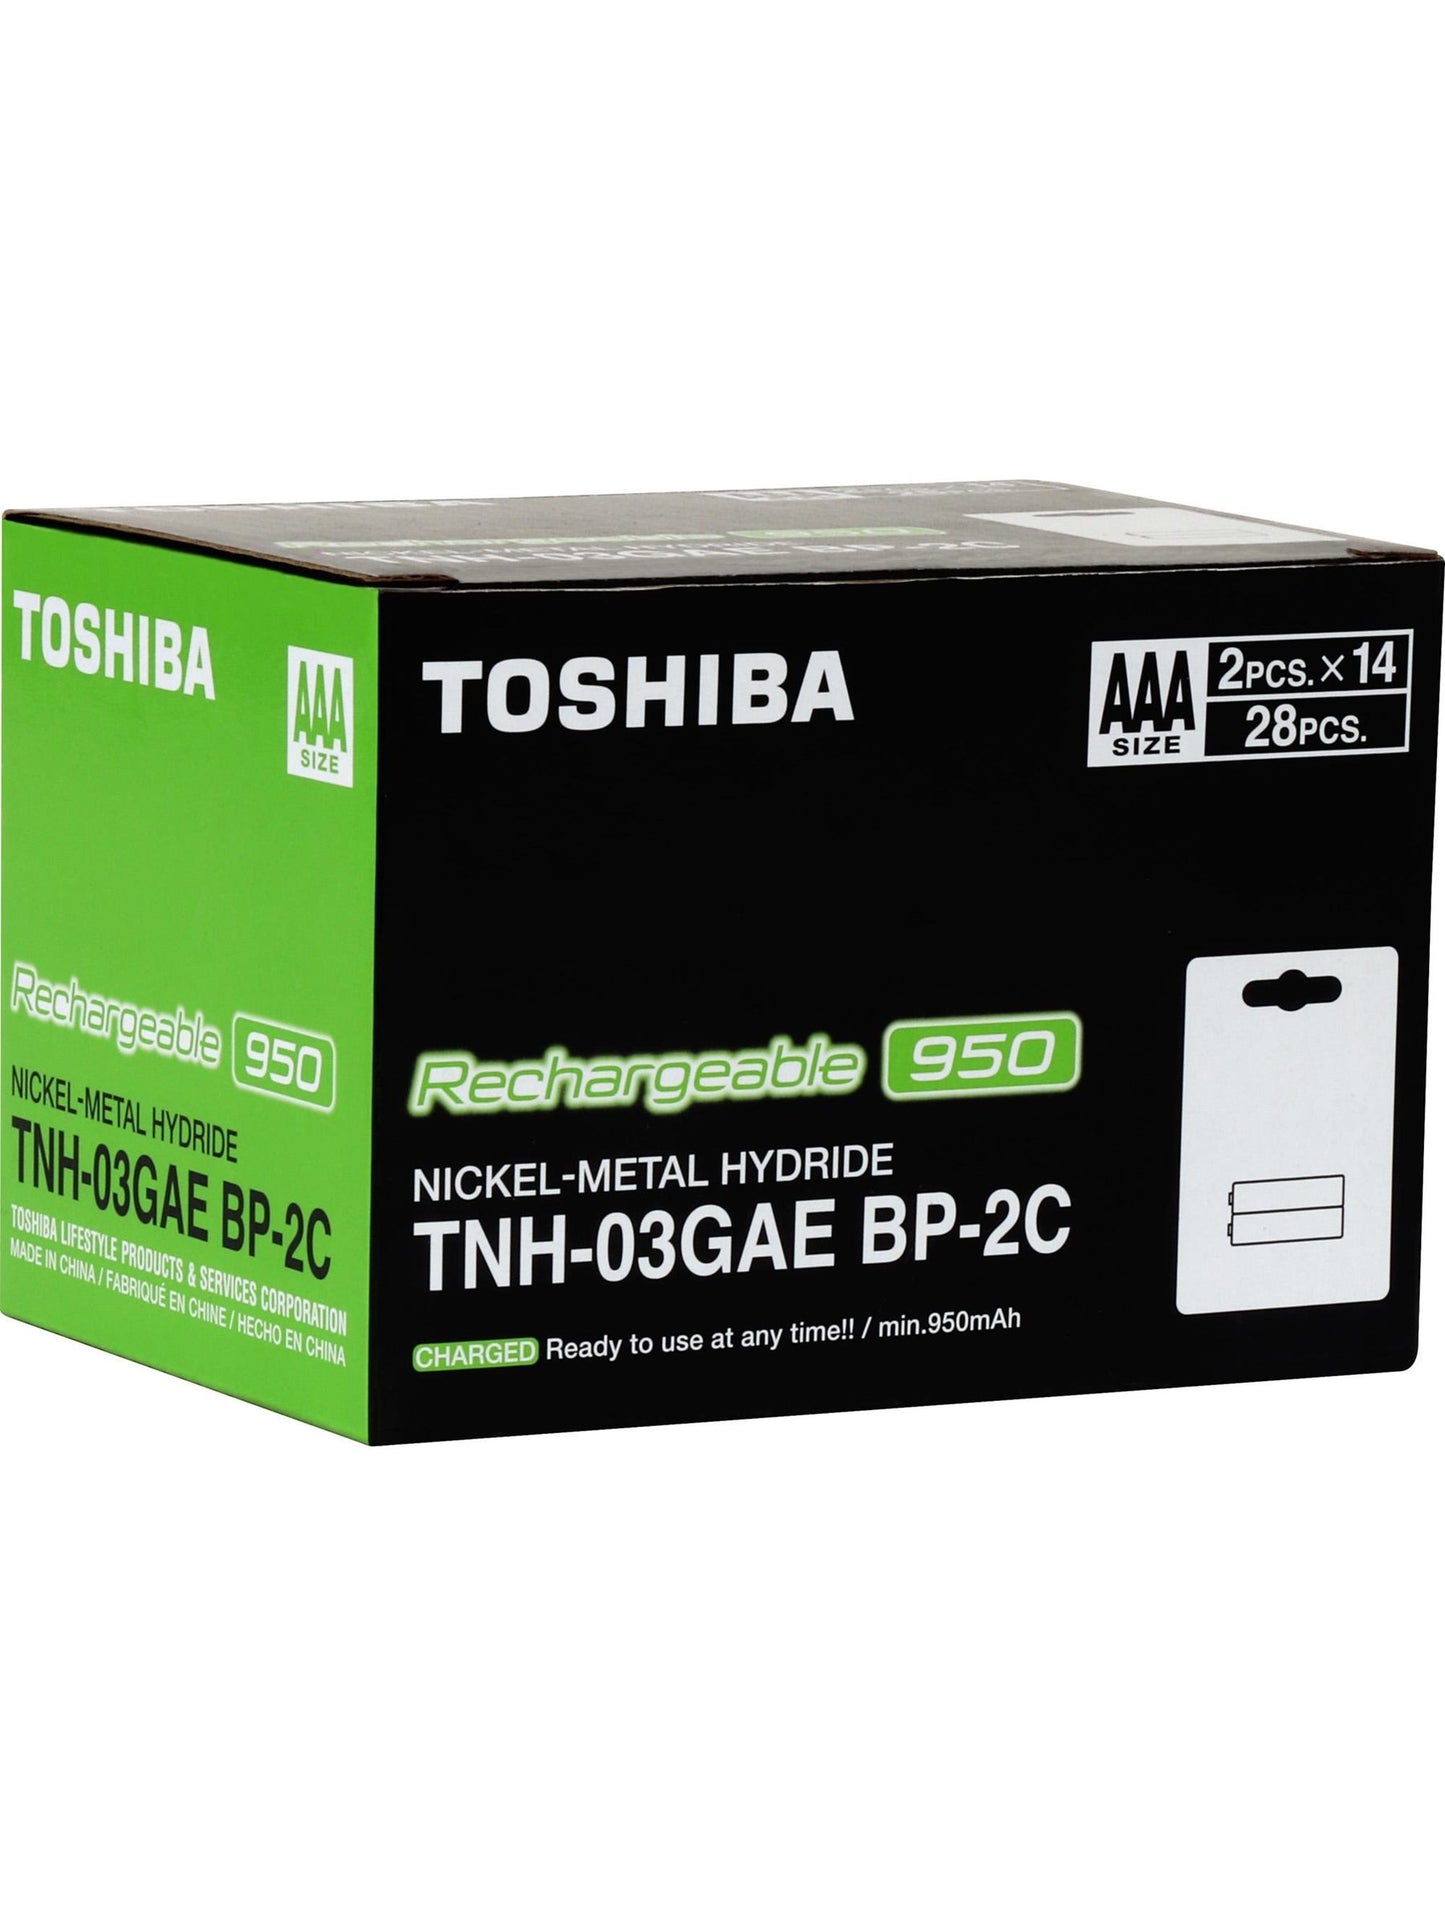 Pilas recargables AAA 1.2V x 2 unidades. Toshiba